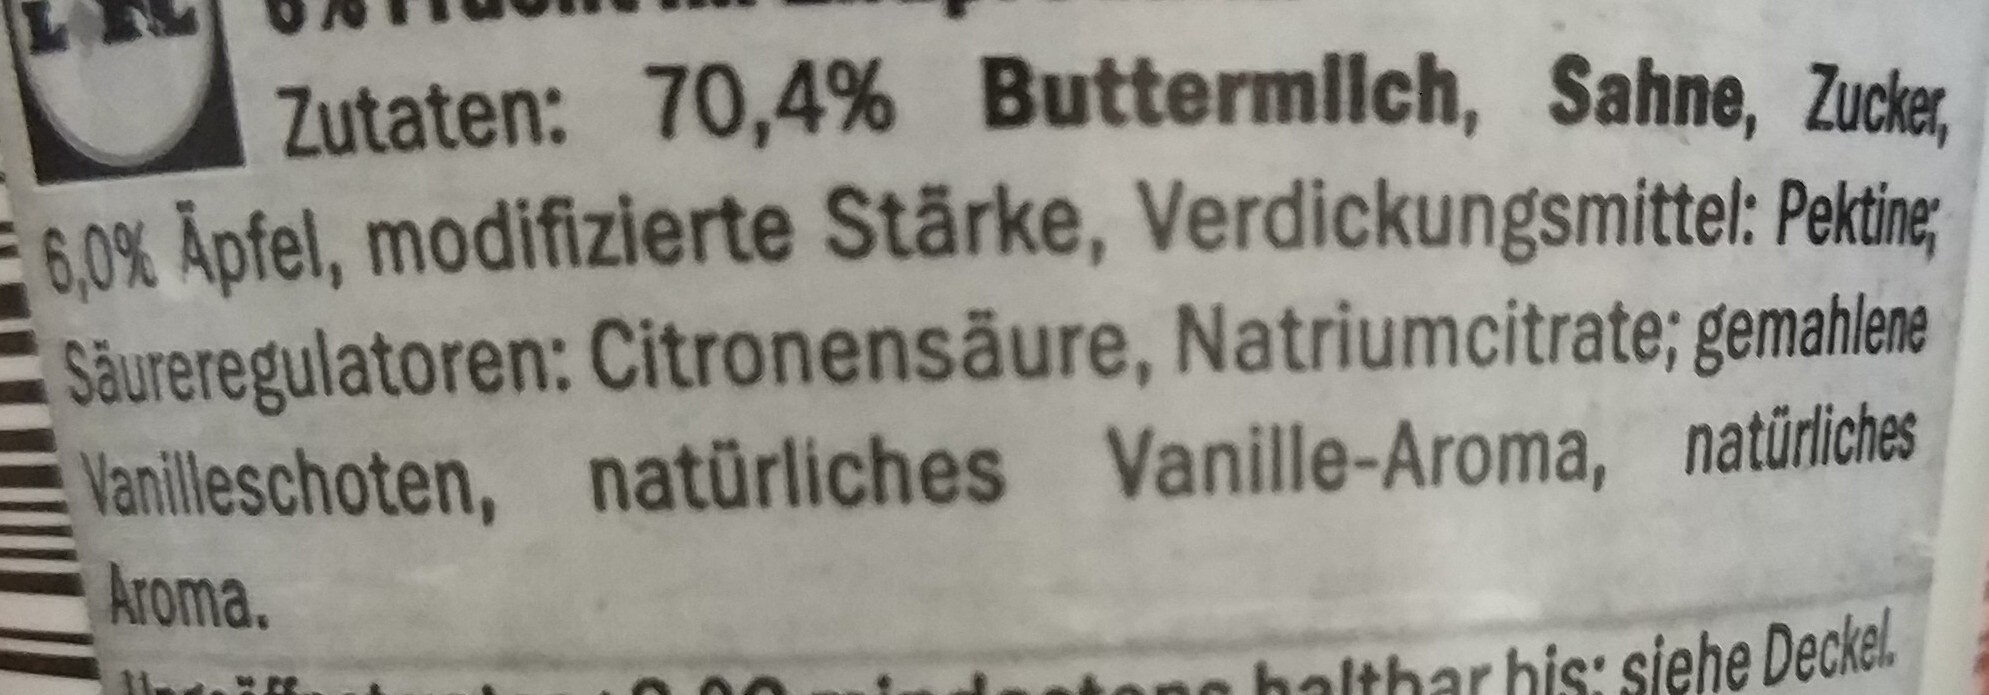 Buttermilch Dessert - Ingredients - de